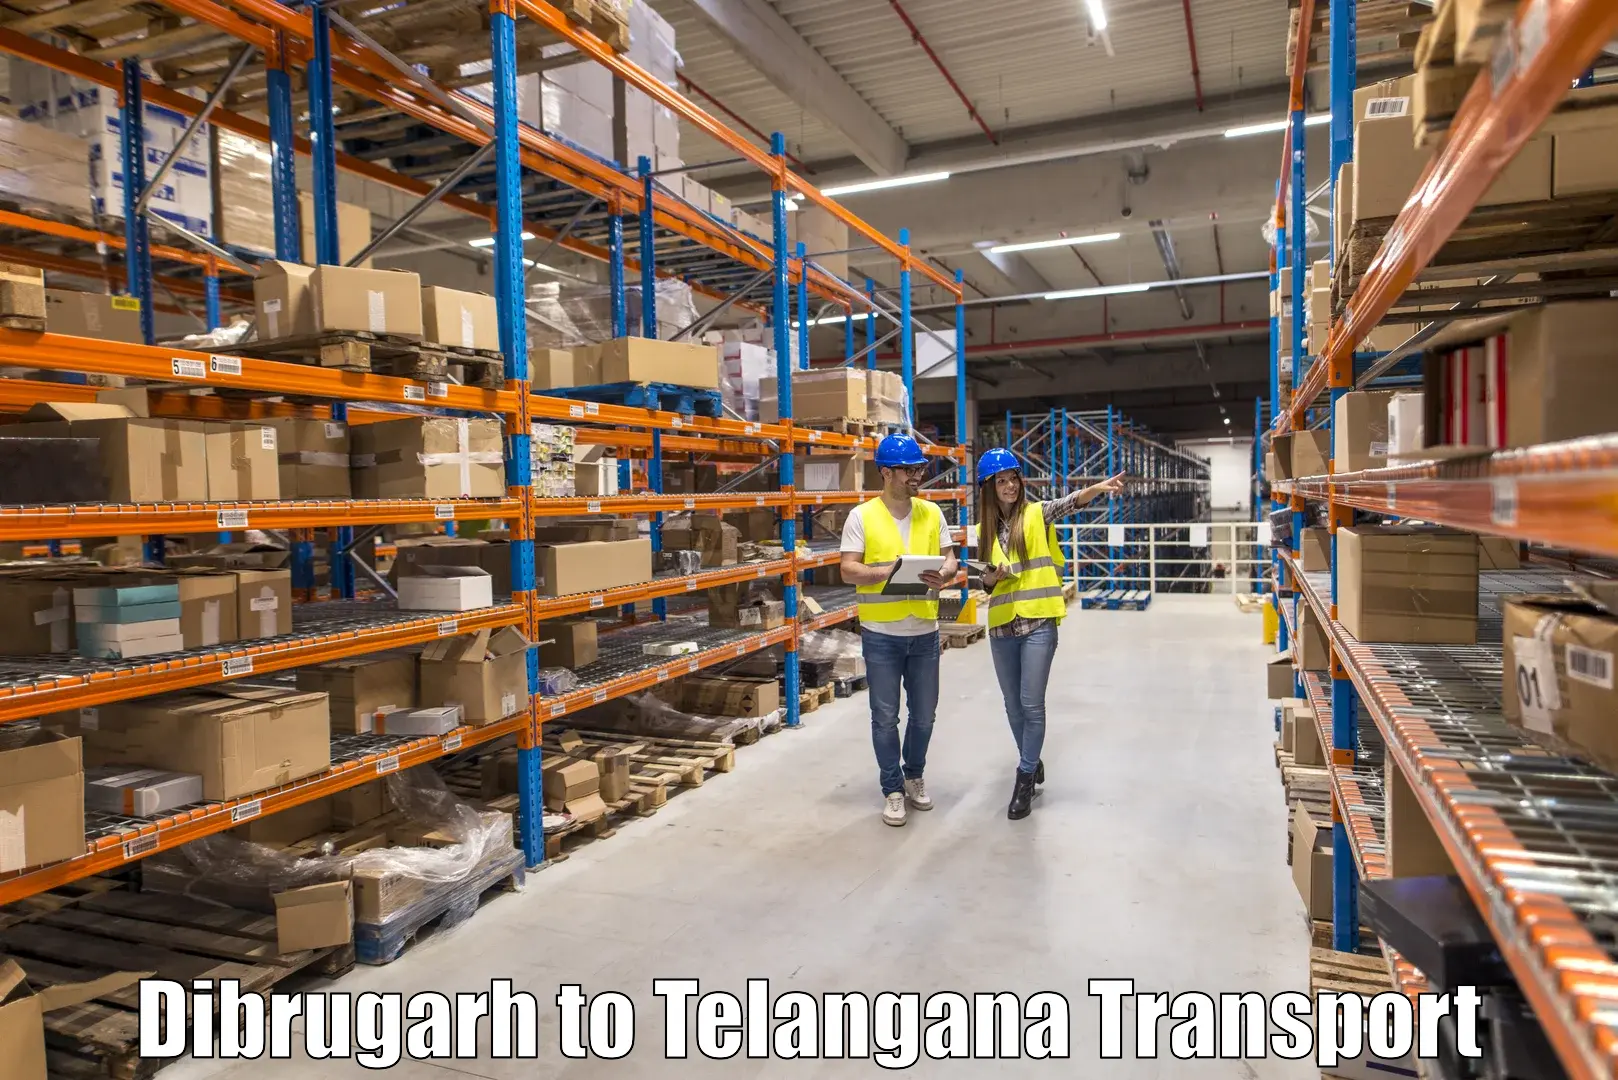 Furniture transport service Dibrugarh to Jangaon